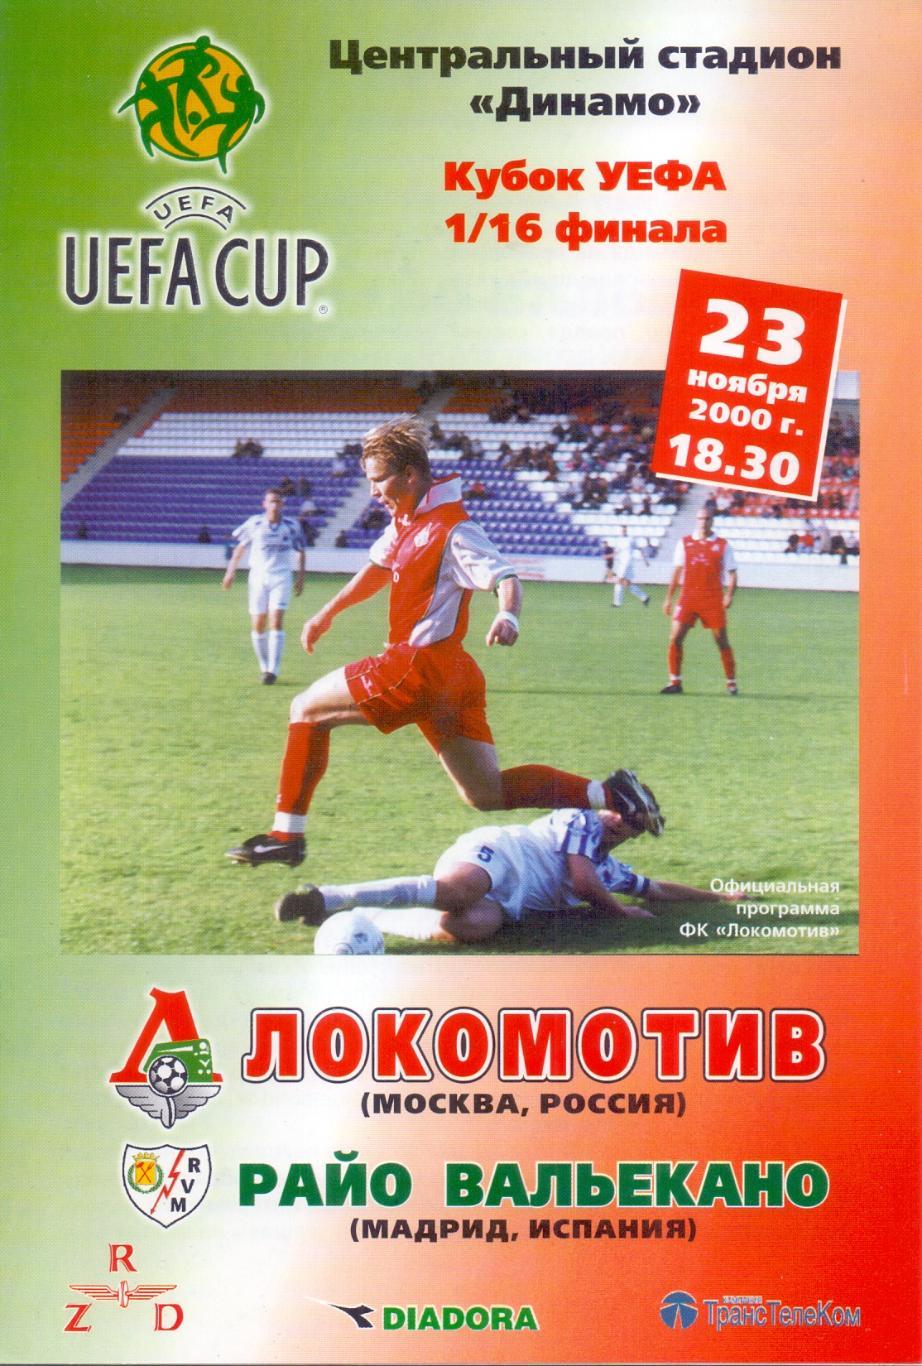 Кубок УЕФА. Локомотив Москва - Райо Вальекано. 23.11.2000 года.